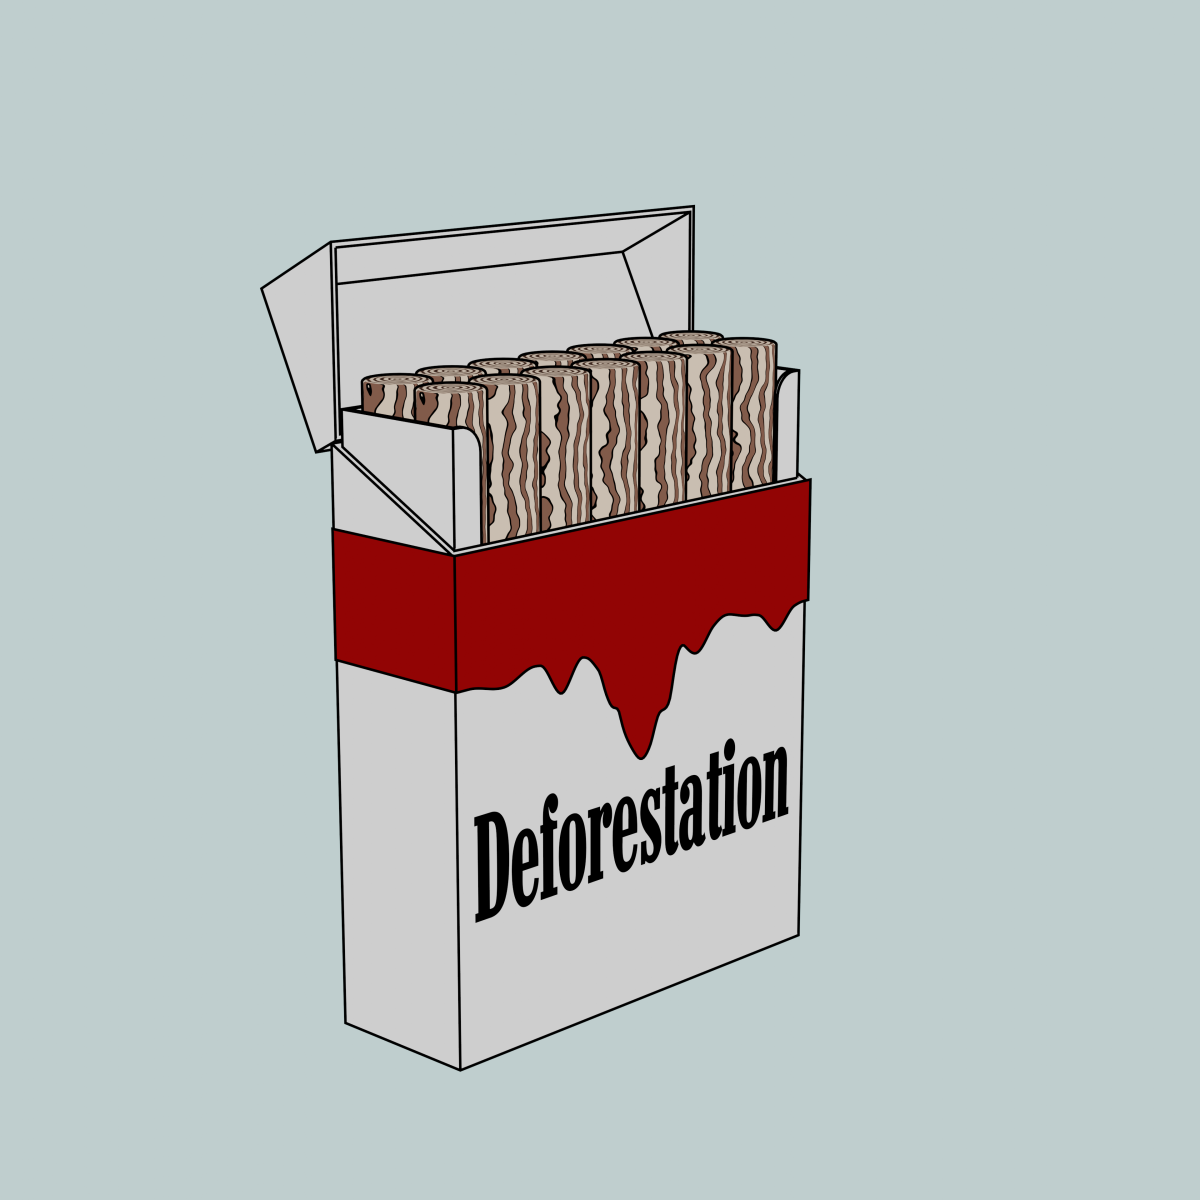 kuva tupakka-askista, jossa lukee deforestation.